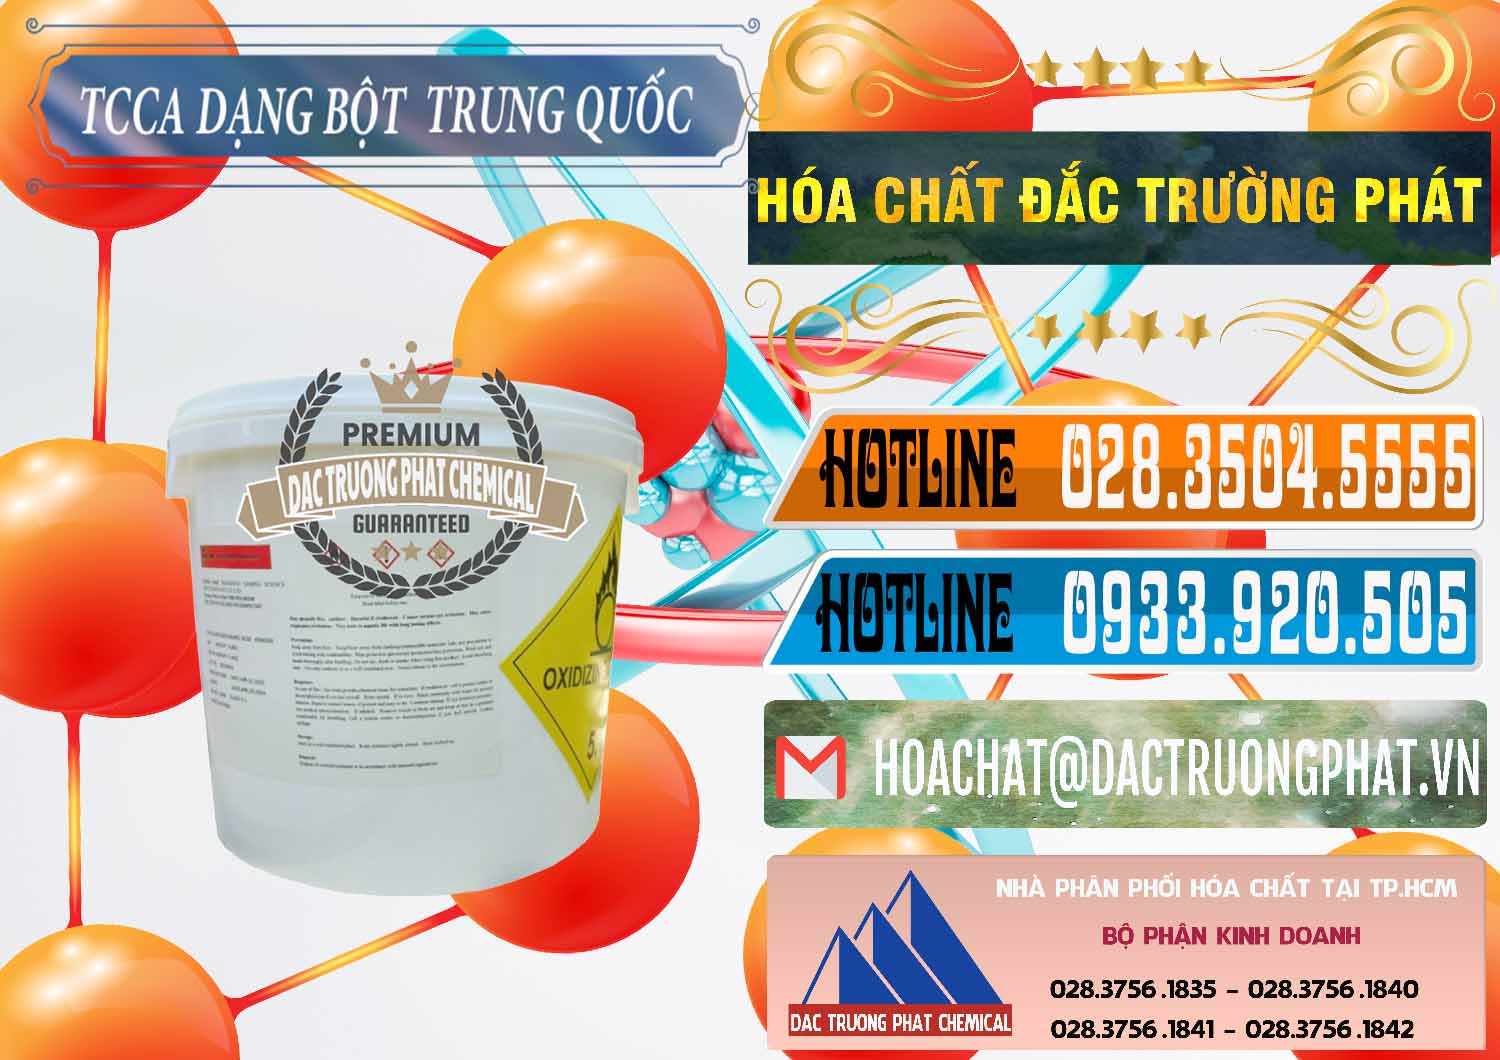 Nơi chuyên bán & phân phối TCCA - Acid Trichloroisocyanuric Dạng Bột Thùng 5kg Trung Quốc China - 0378 - Cty chuyên bán & cung cấp hóa chất tại TP.HCM - stmp.net